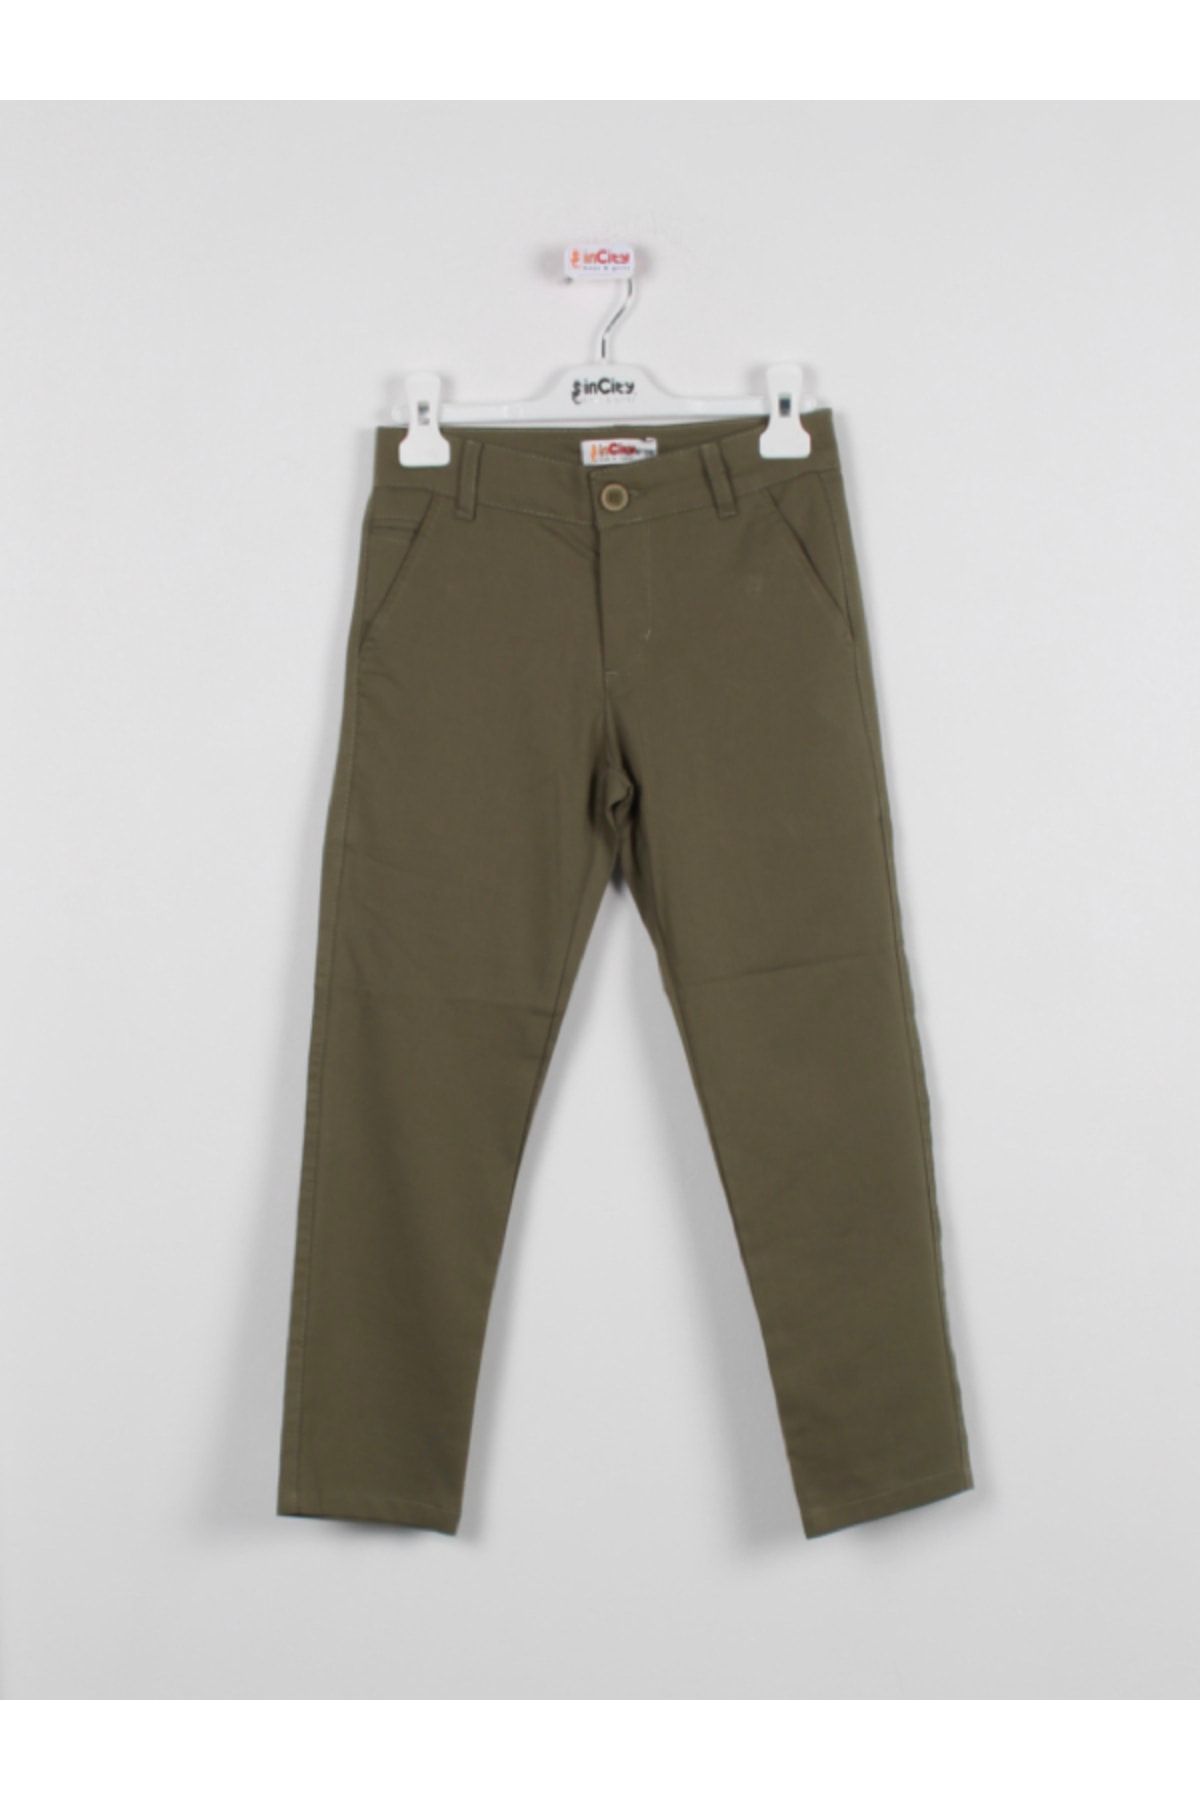 incity Erkek Çocuk Haki Yeşil Kumaş Pantolon